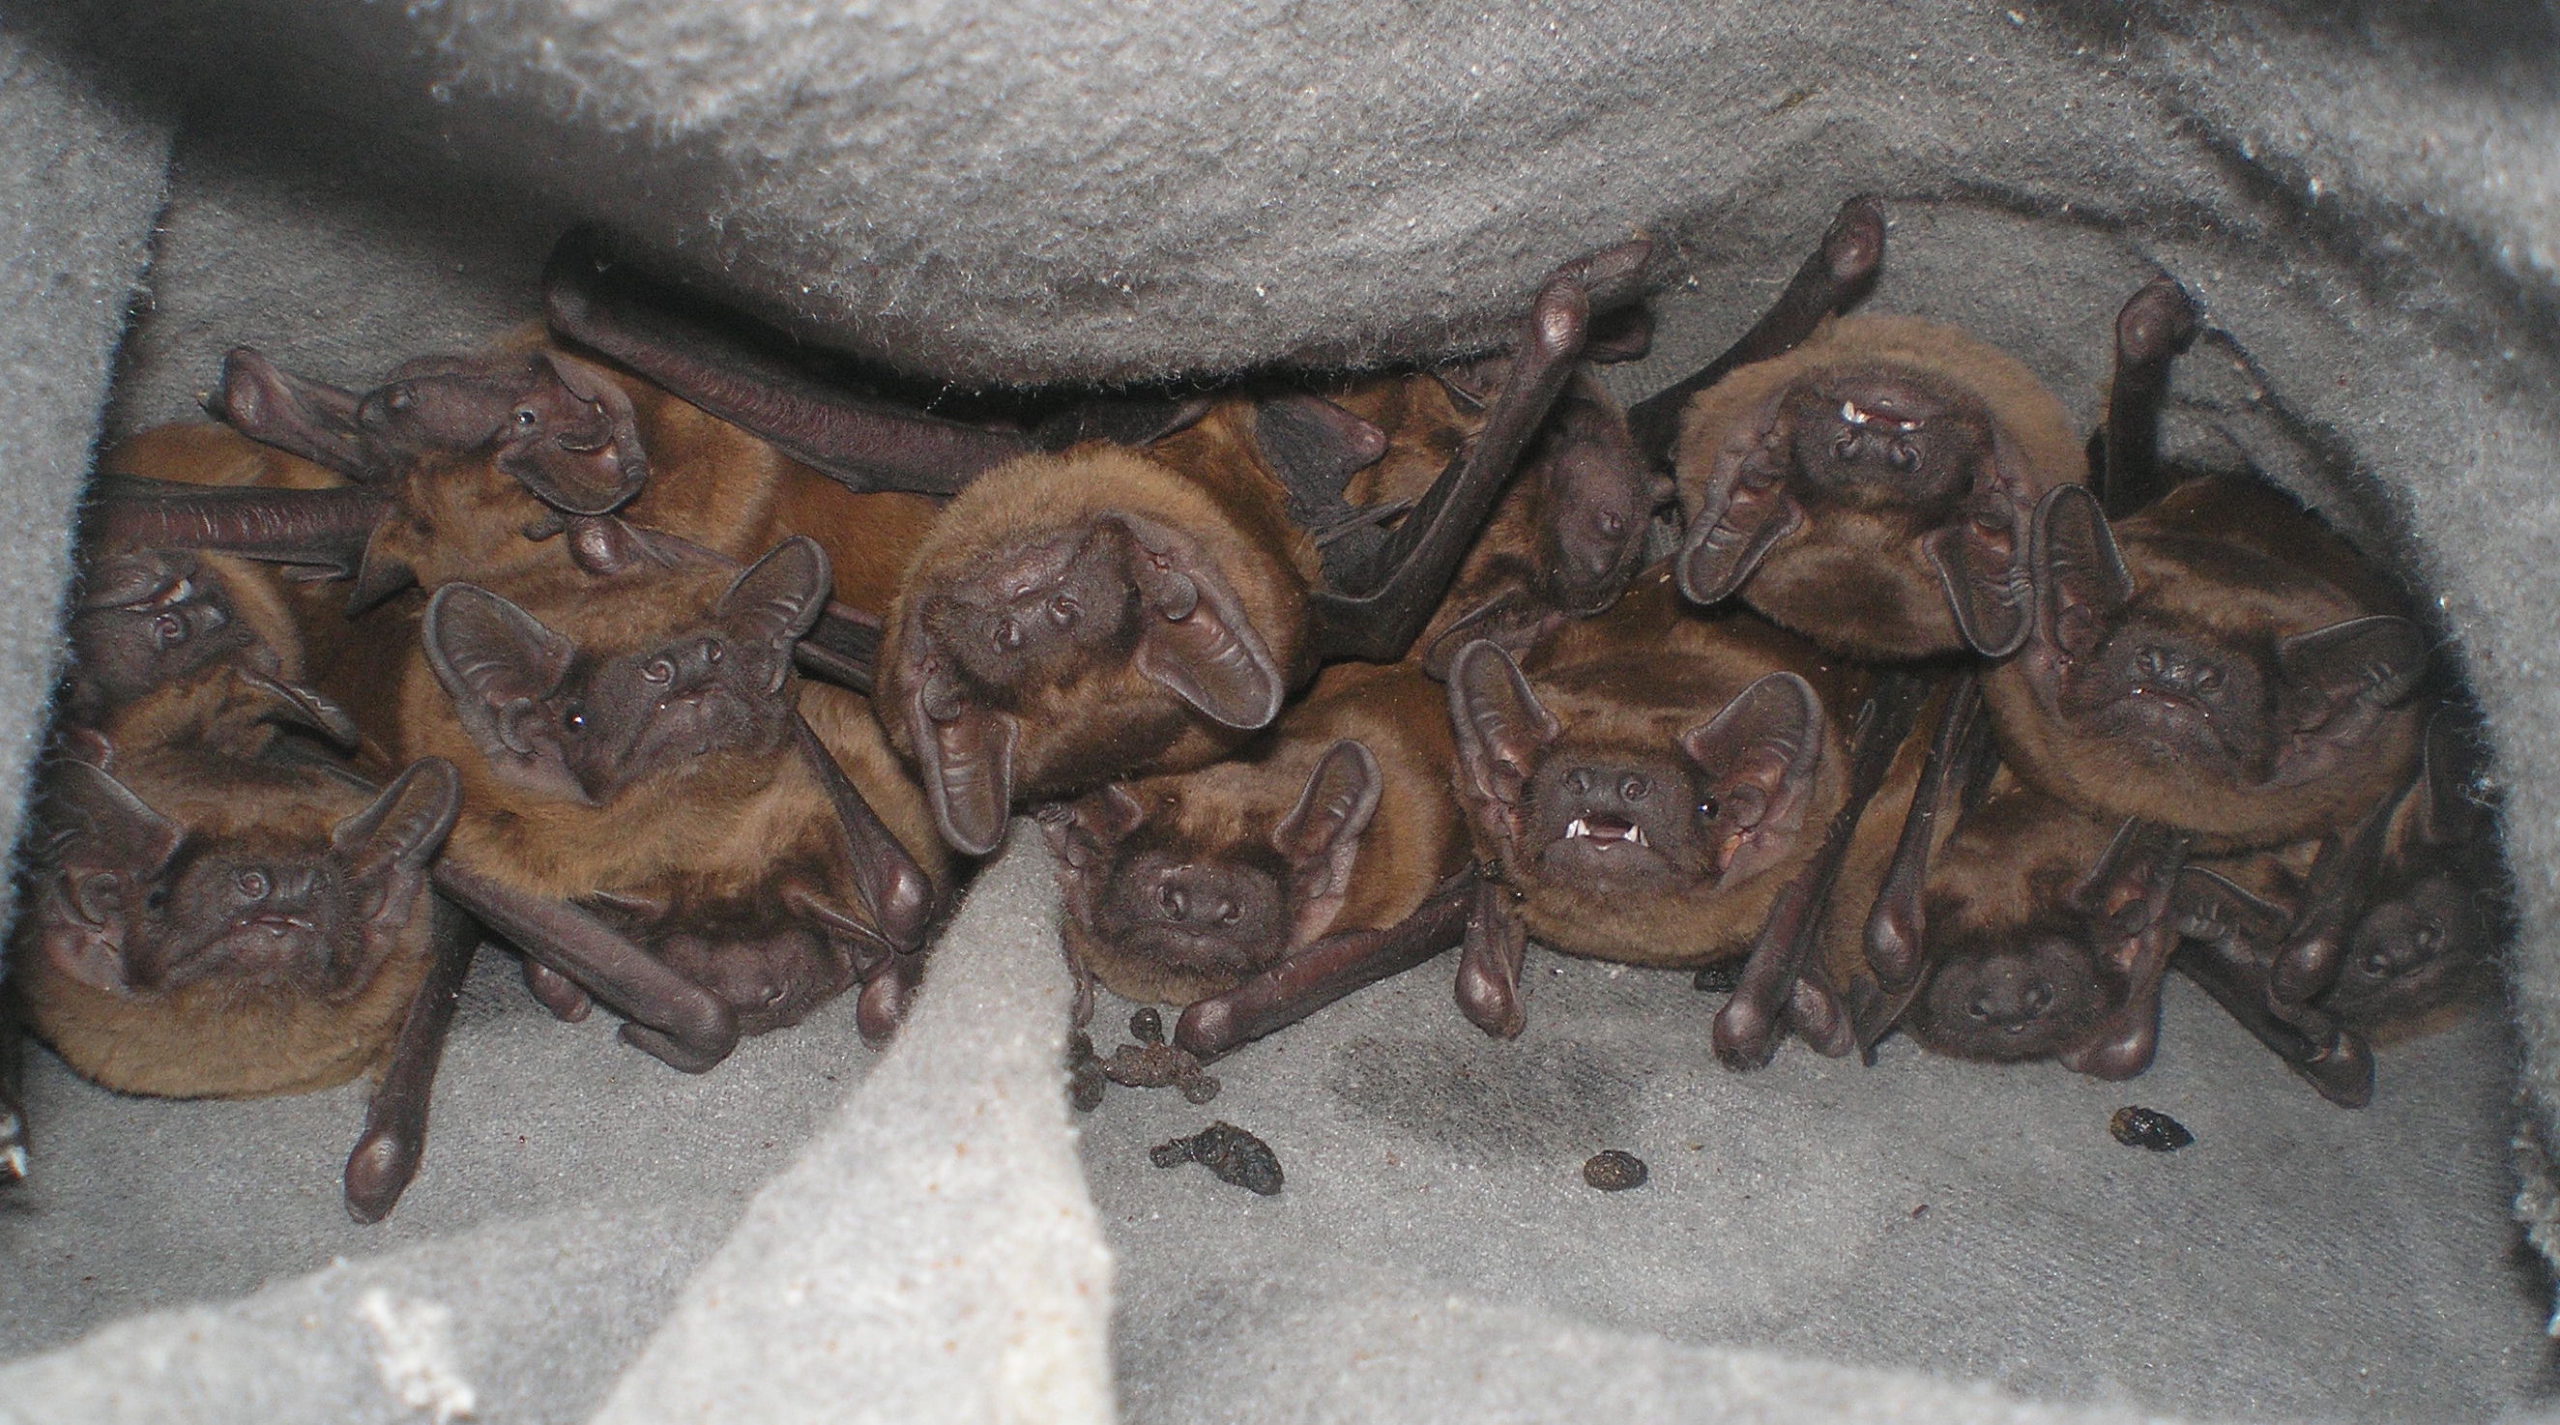 Bat colonies collector